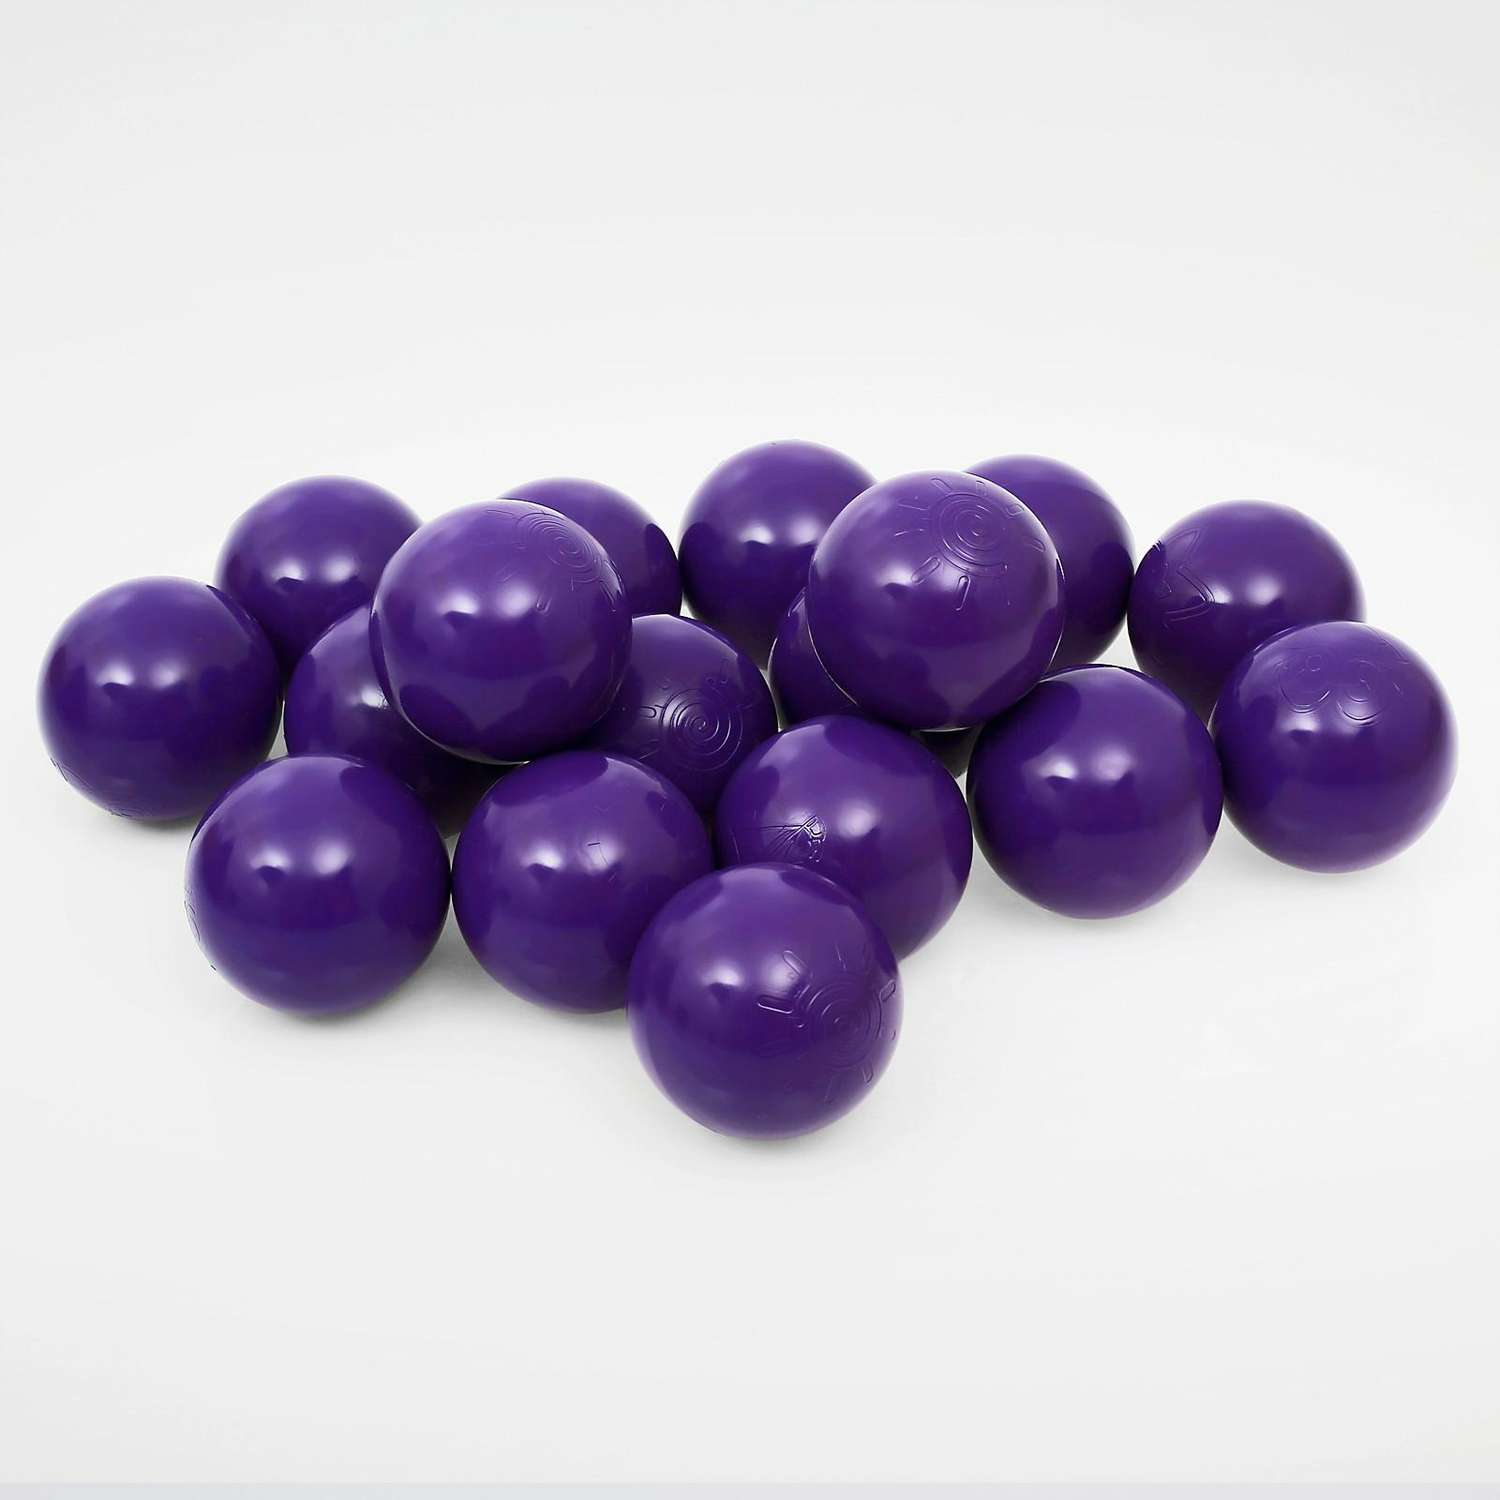 Шарики для сухого бассейна Соломон 500 шт цвет фиолетовый - фото 1